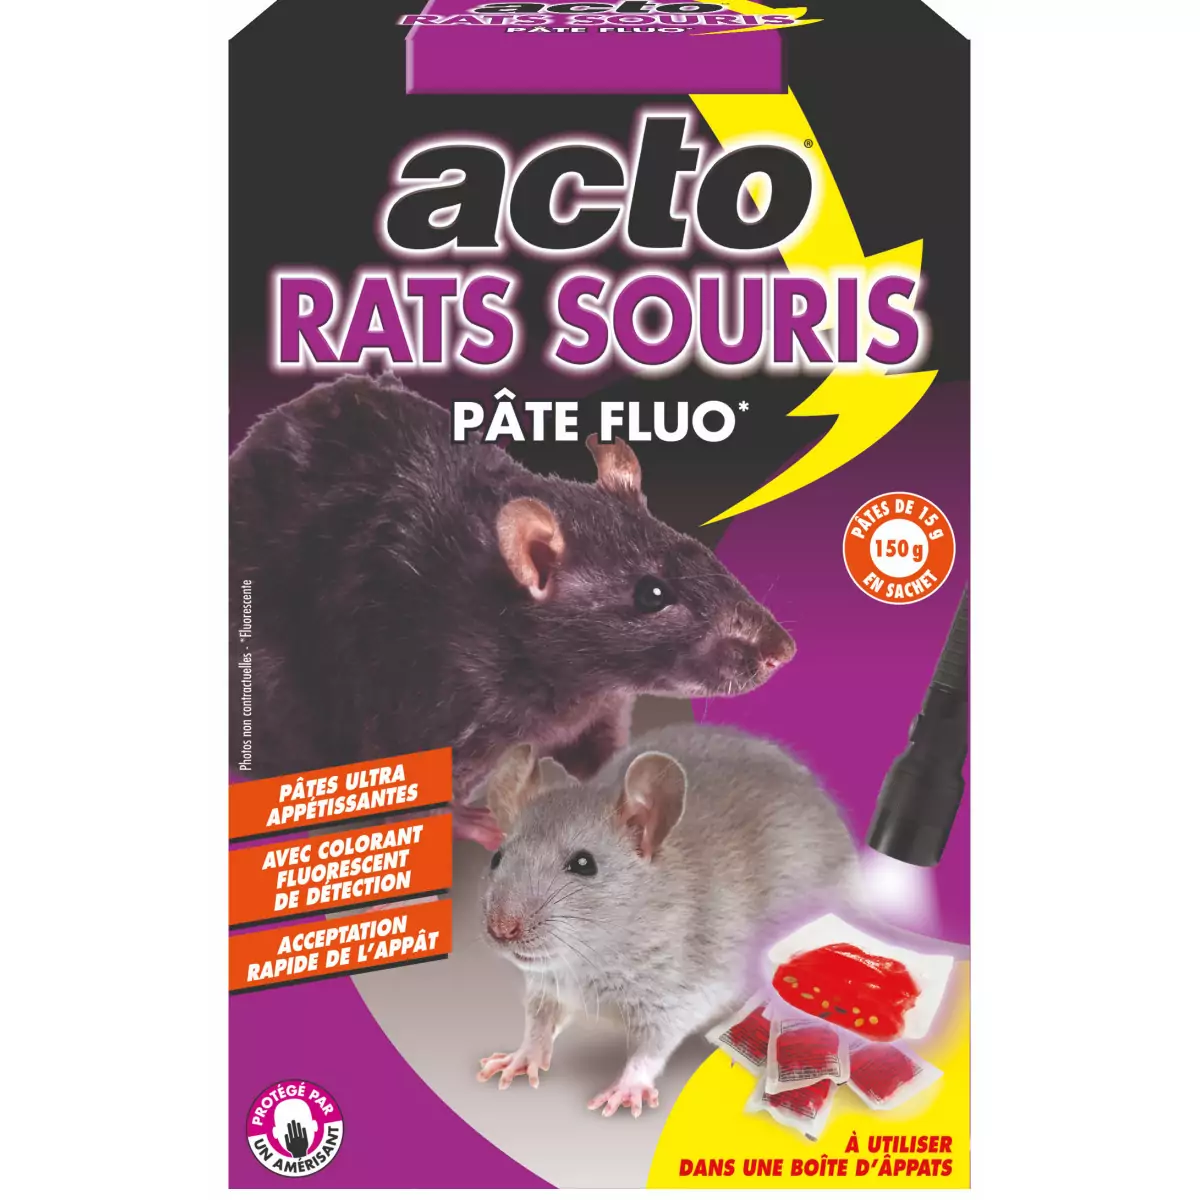 K-O max lutte contre les rats et souris avec sa gamme de rodonticides